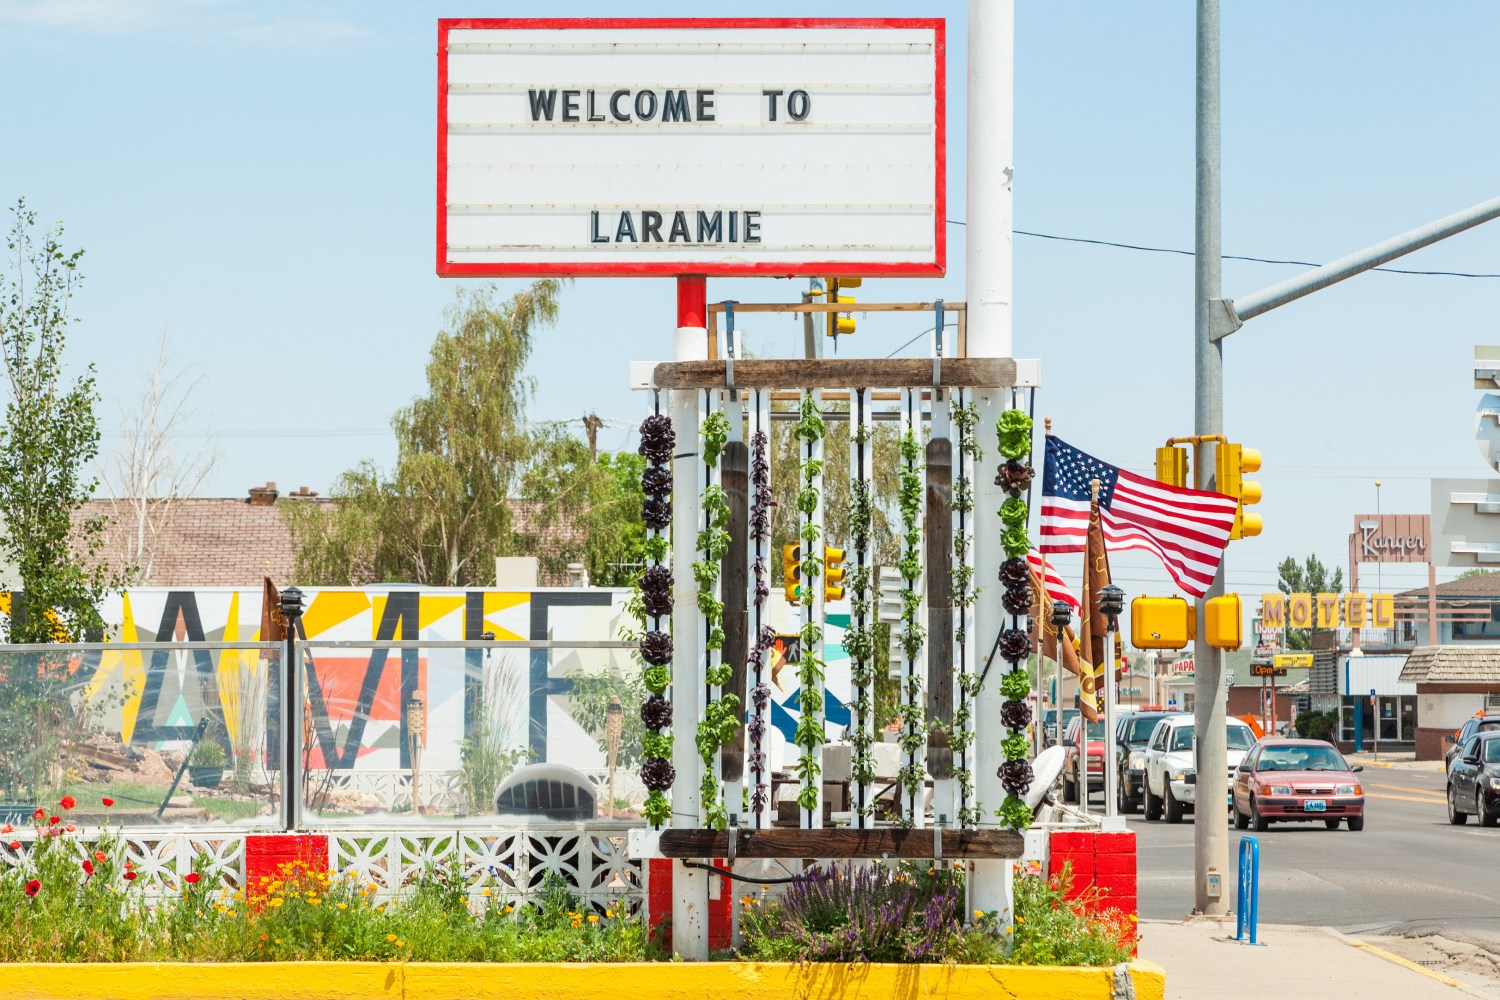 Travel Inn Farm Laramie